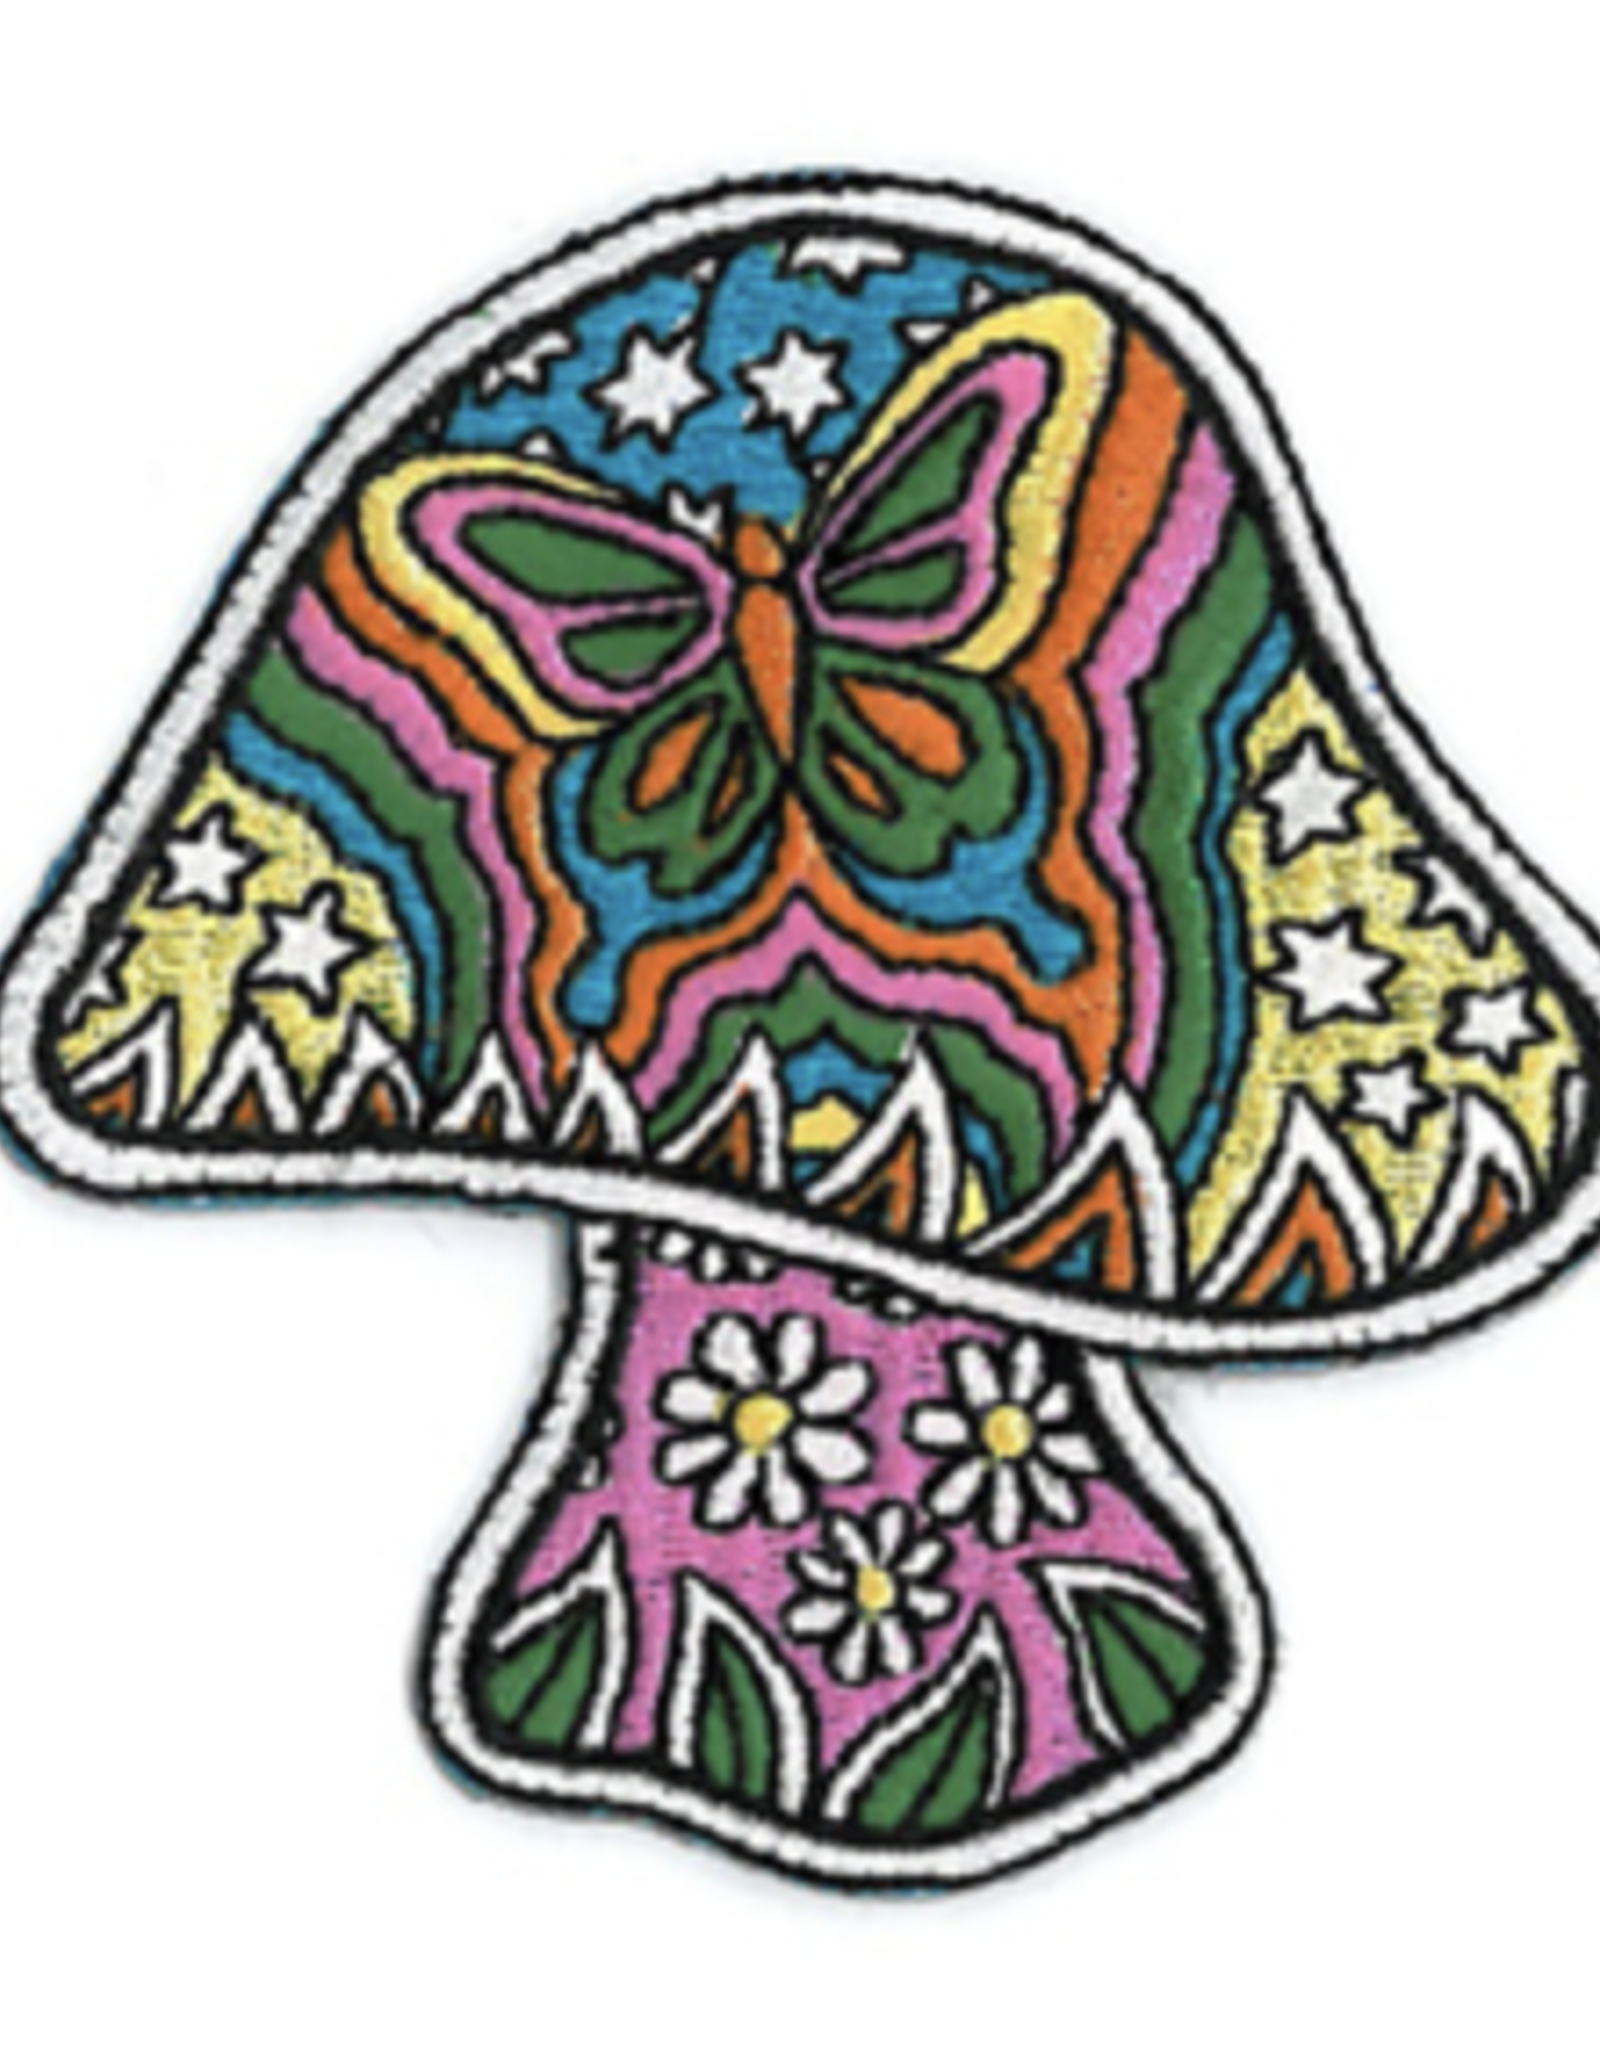 Dan Morris Butterfly Mushroom Patch